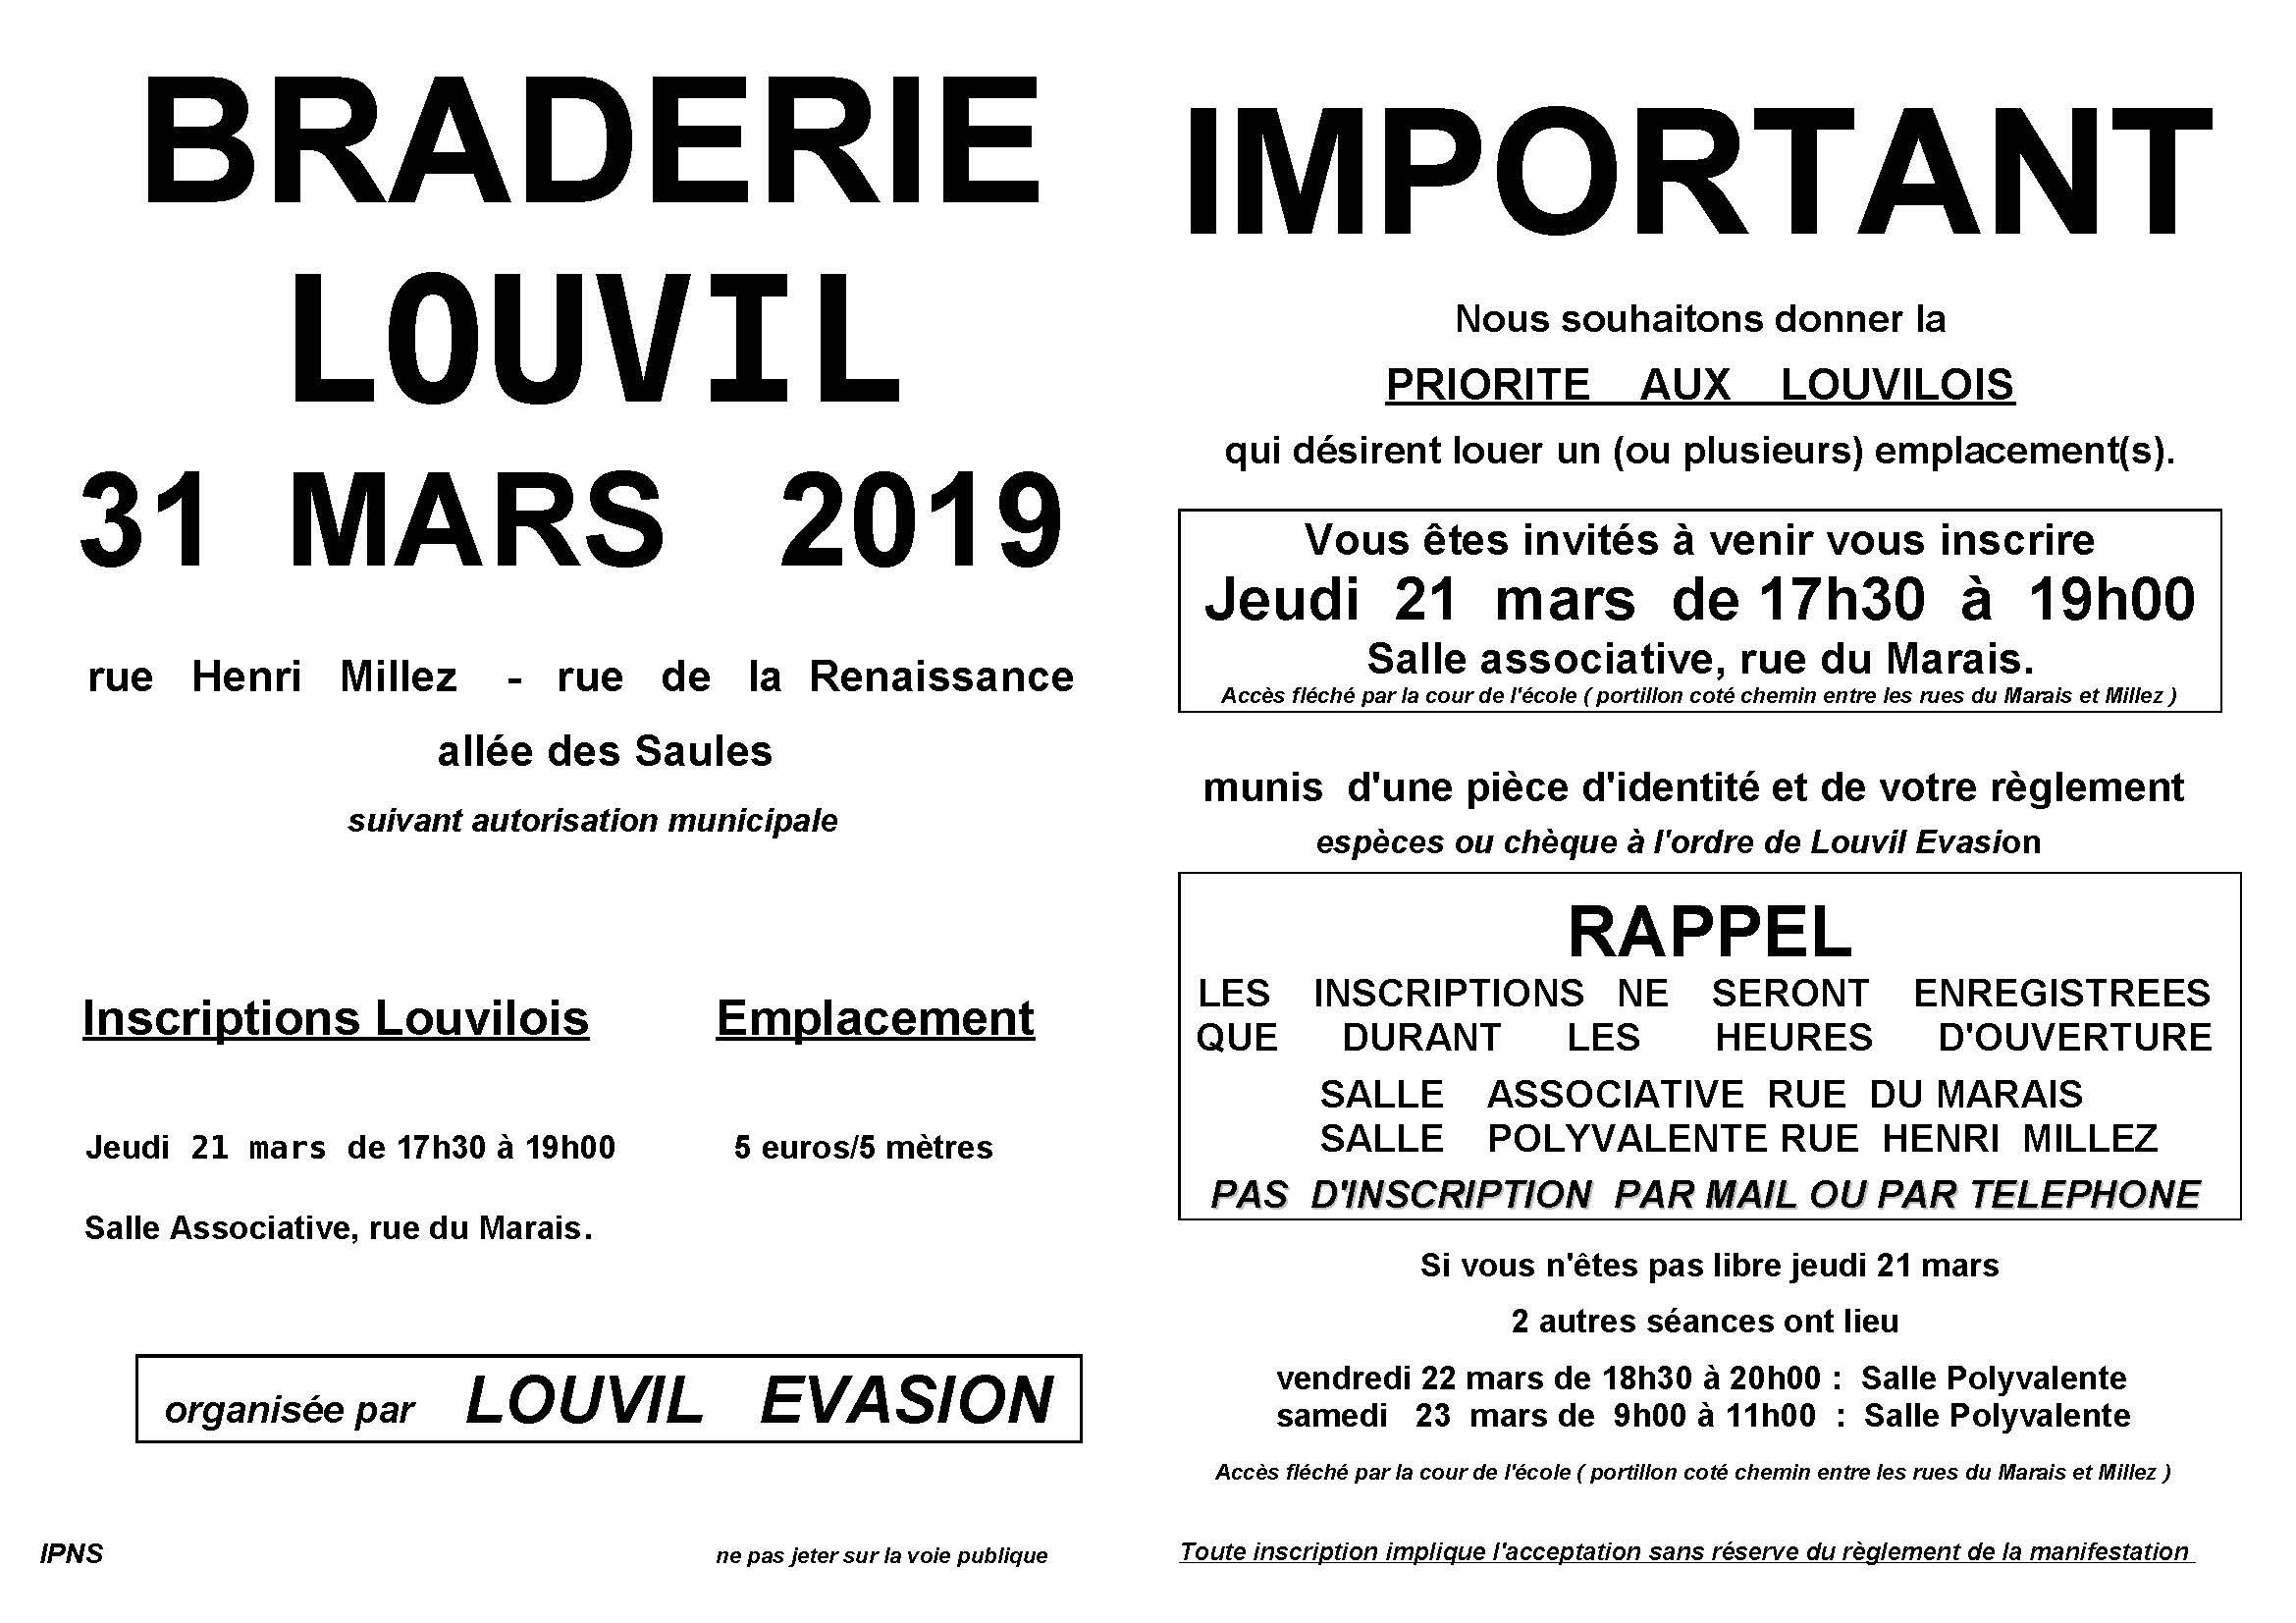 Braderie Louvil 2019